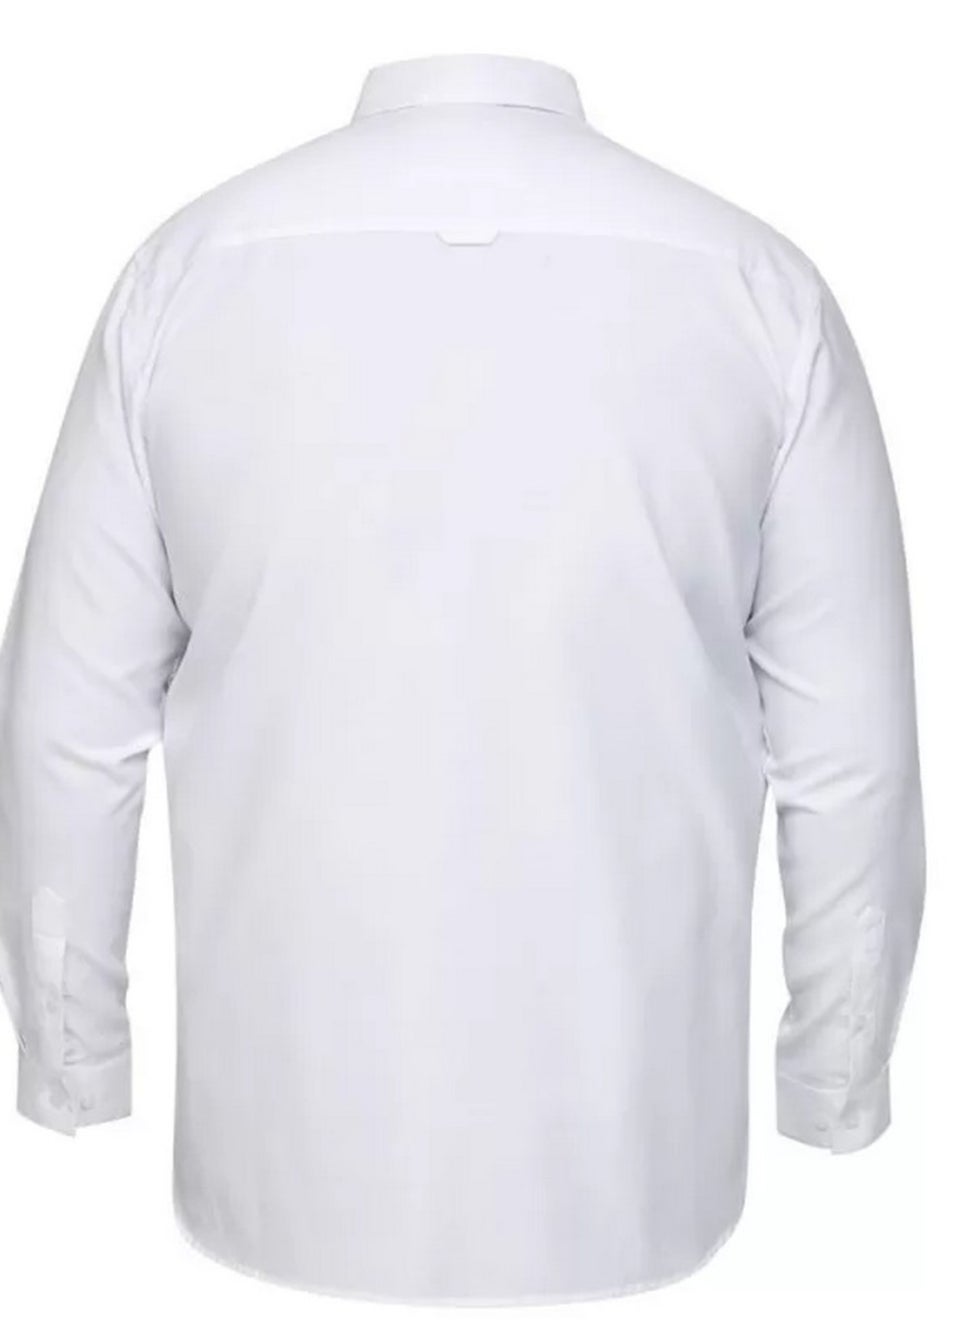 Duke White Richard Oxford Kingsize Long-Sleeved Shirt